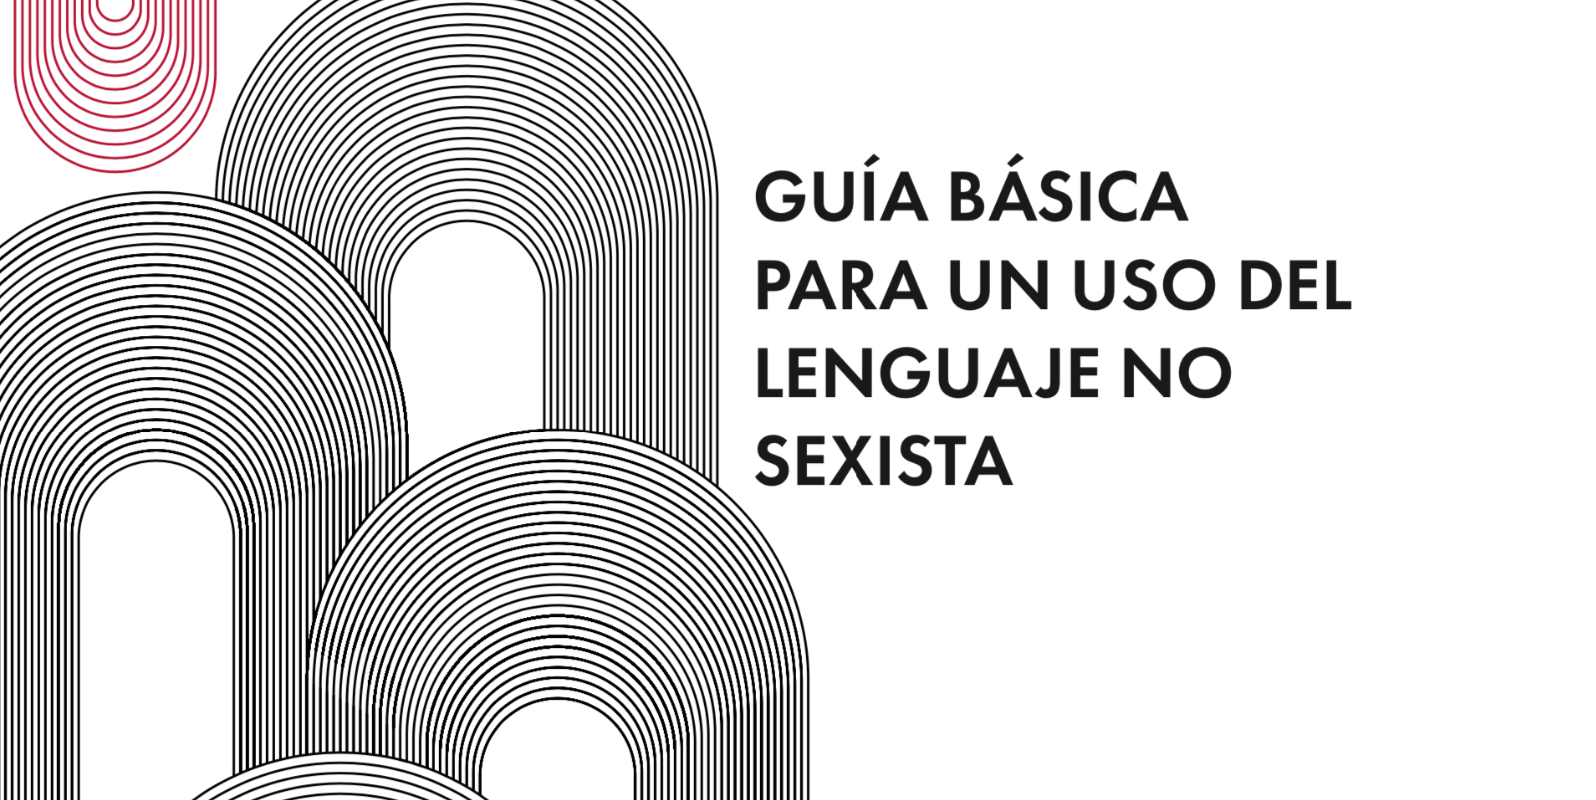 Guía básica para un uso del lenguaje no sexista 